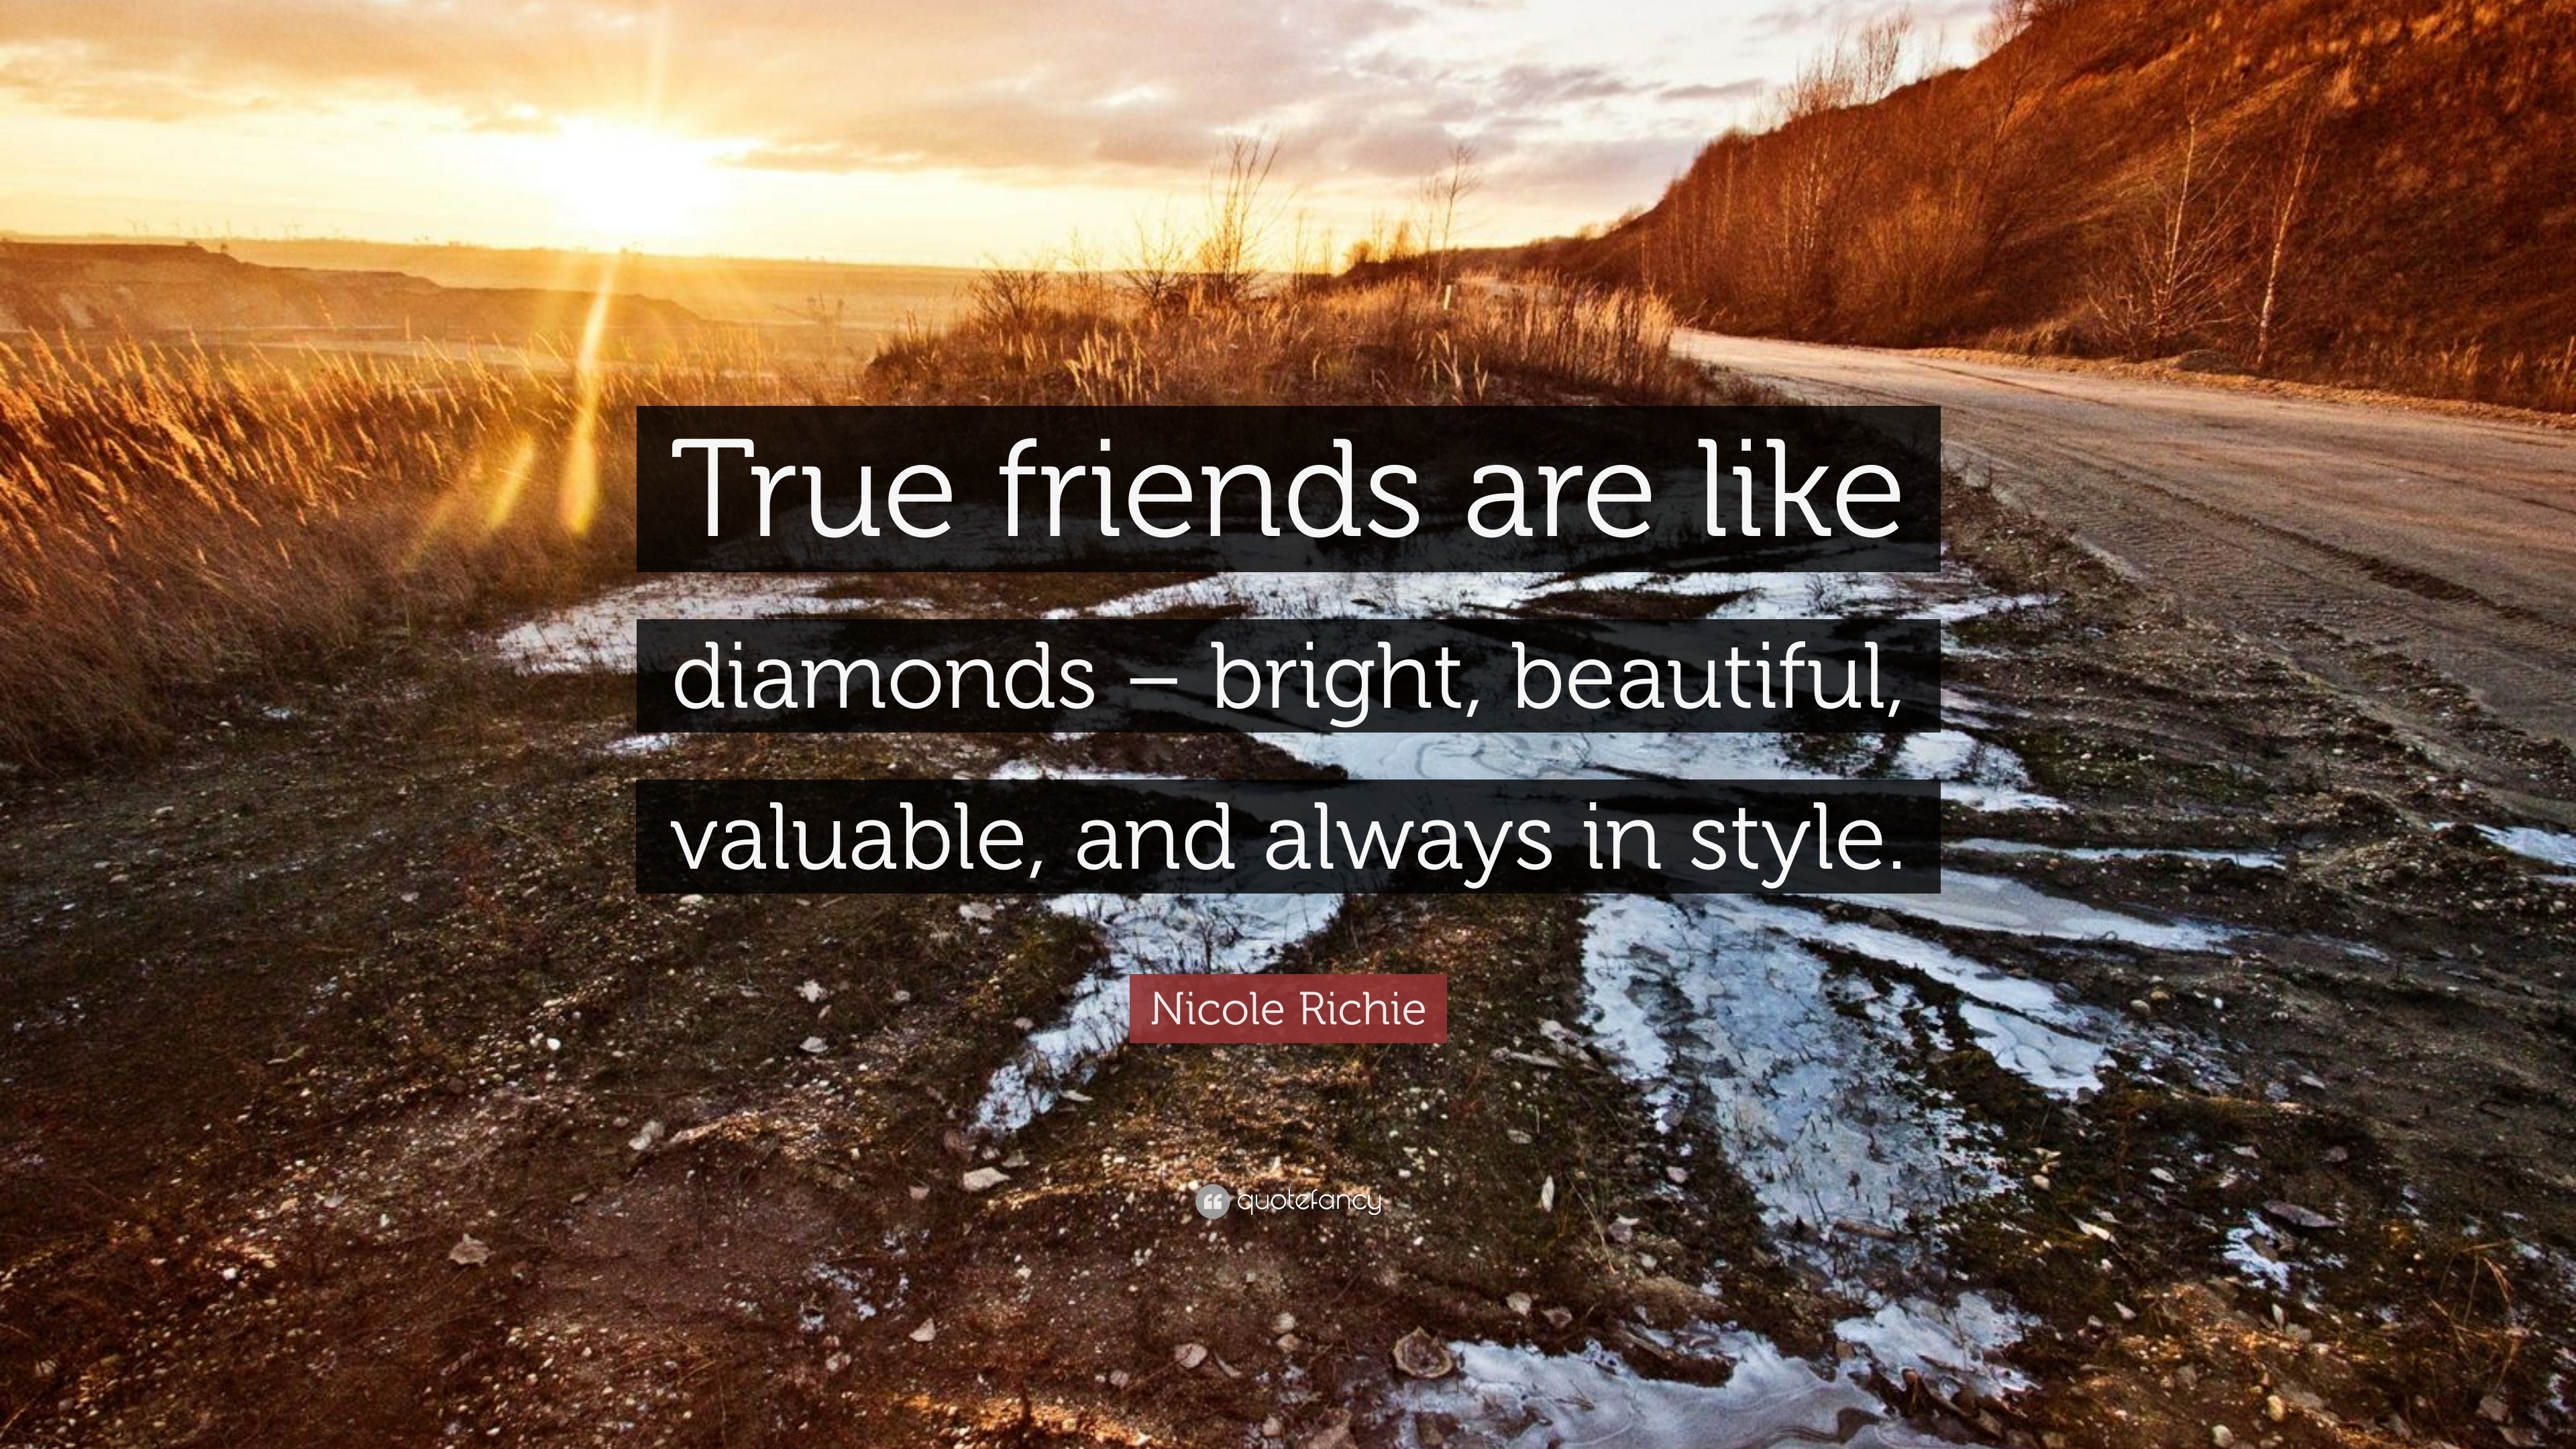 Nicole Richie Quote: “True friends are like diamonds – bright ...